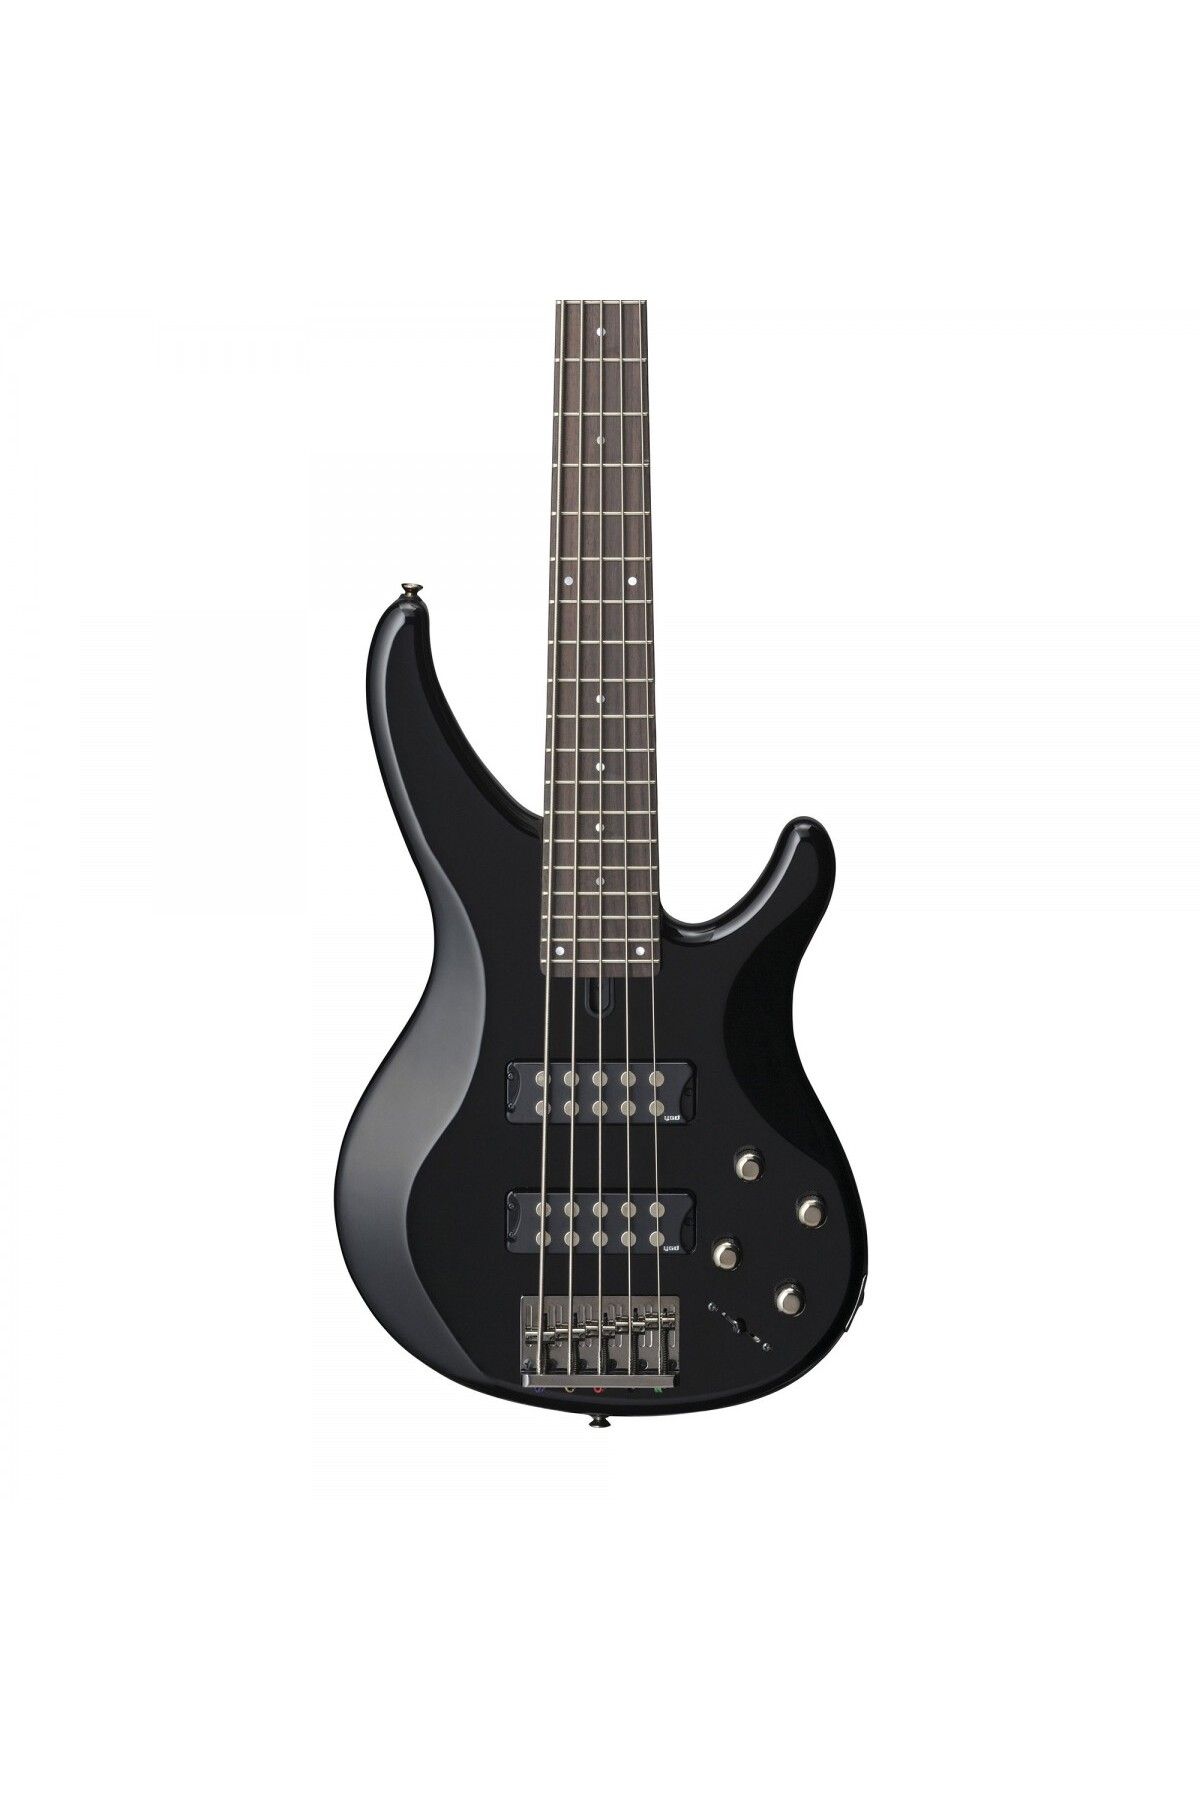 Yamaha Trbx305bl 5 Telli Bas Gitar